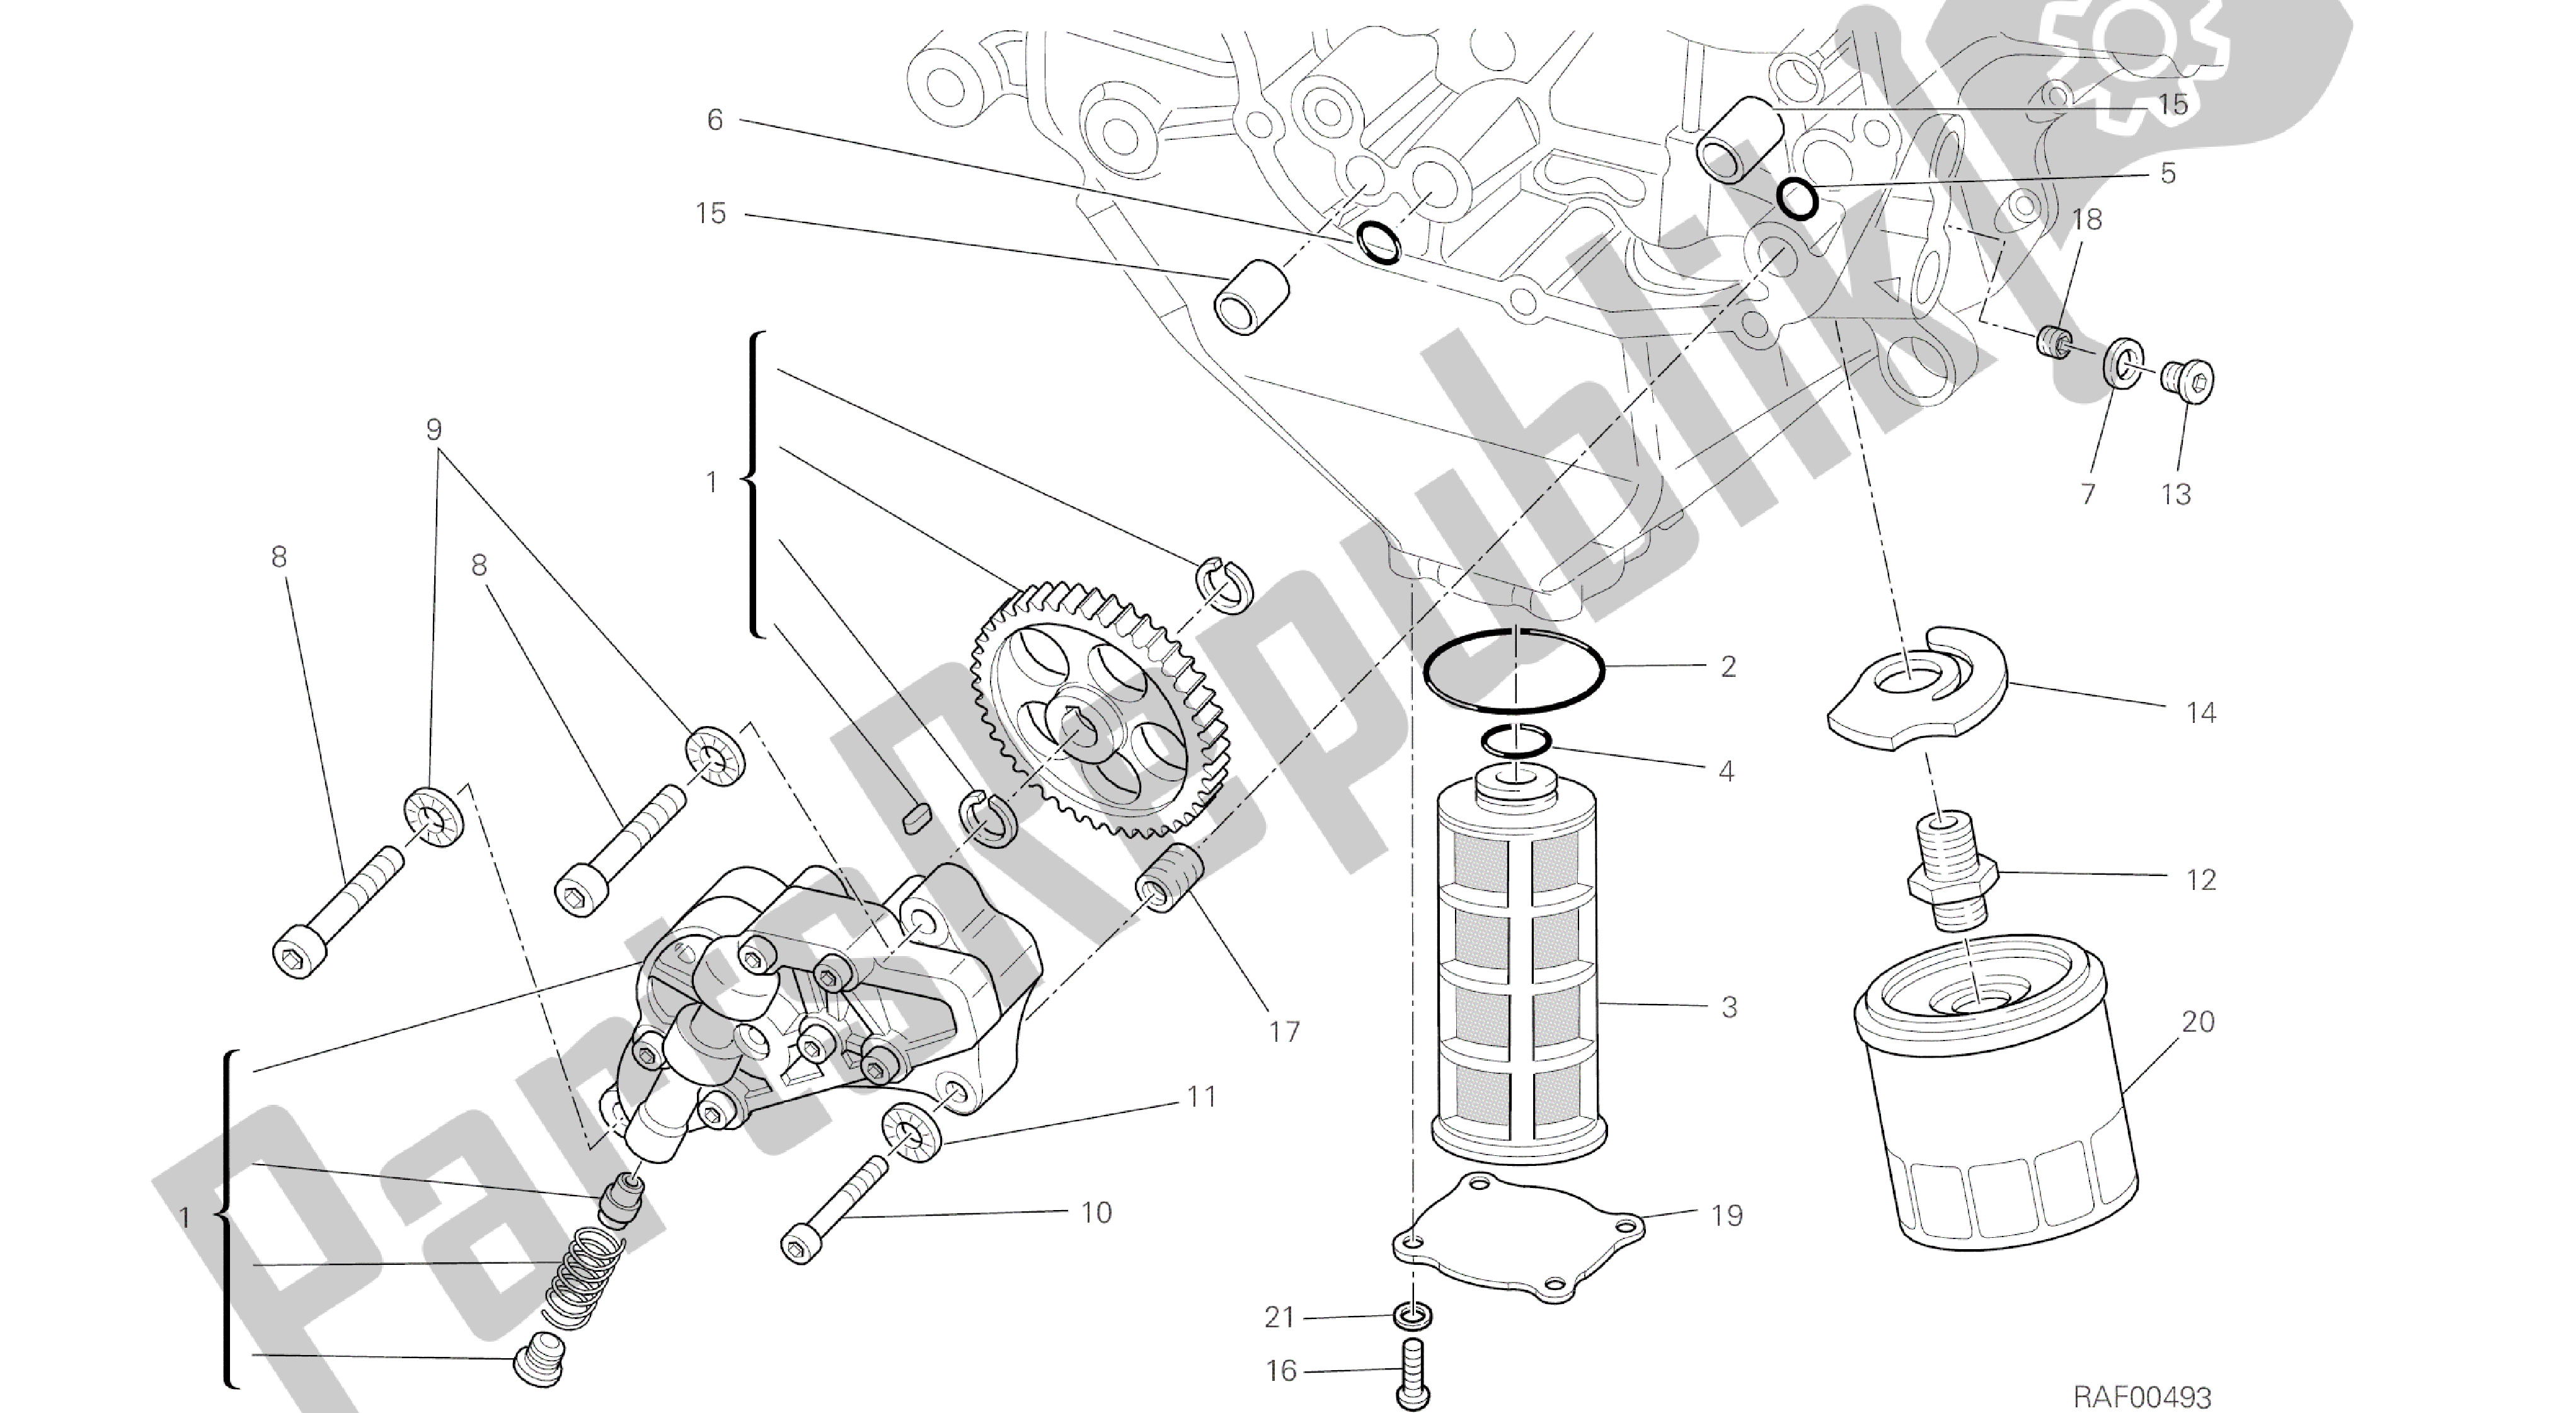 Todas las partes para Dibujo 009 - Motor De Grupo De Filtros Y Bomba De Aceite [mod: Dvl] de Ducati Diavel 1200 2016